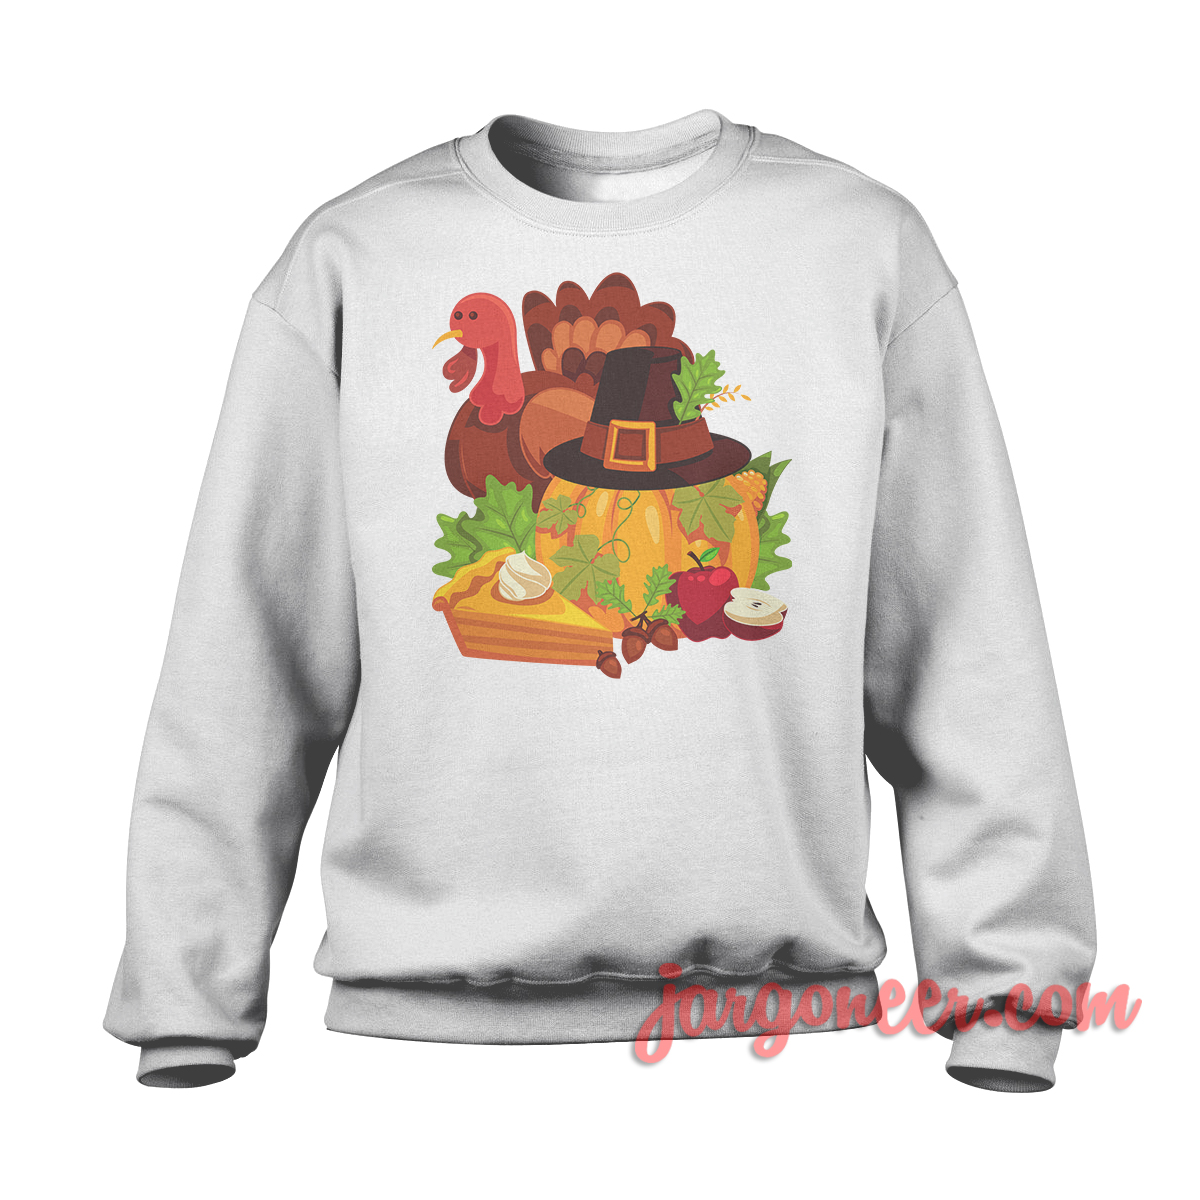 Happy Thanksgiving Elements White SS - Shop Unique Graphic Cool Shirt Designs